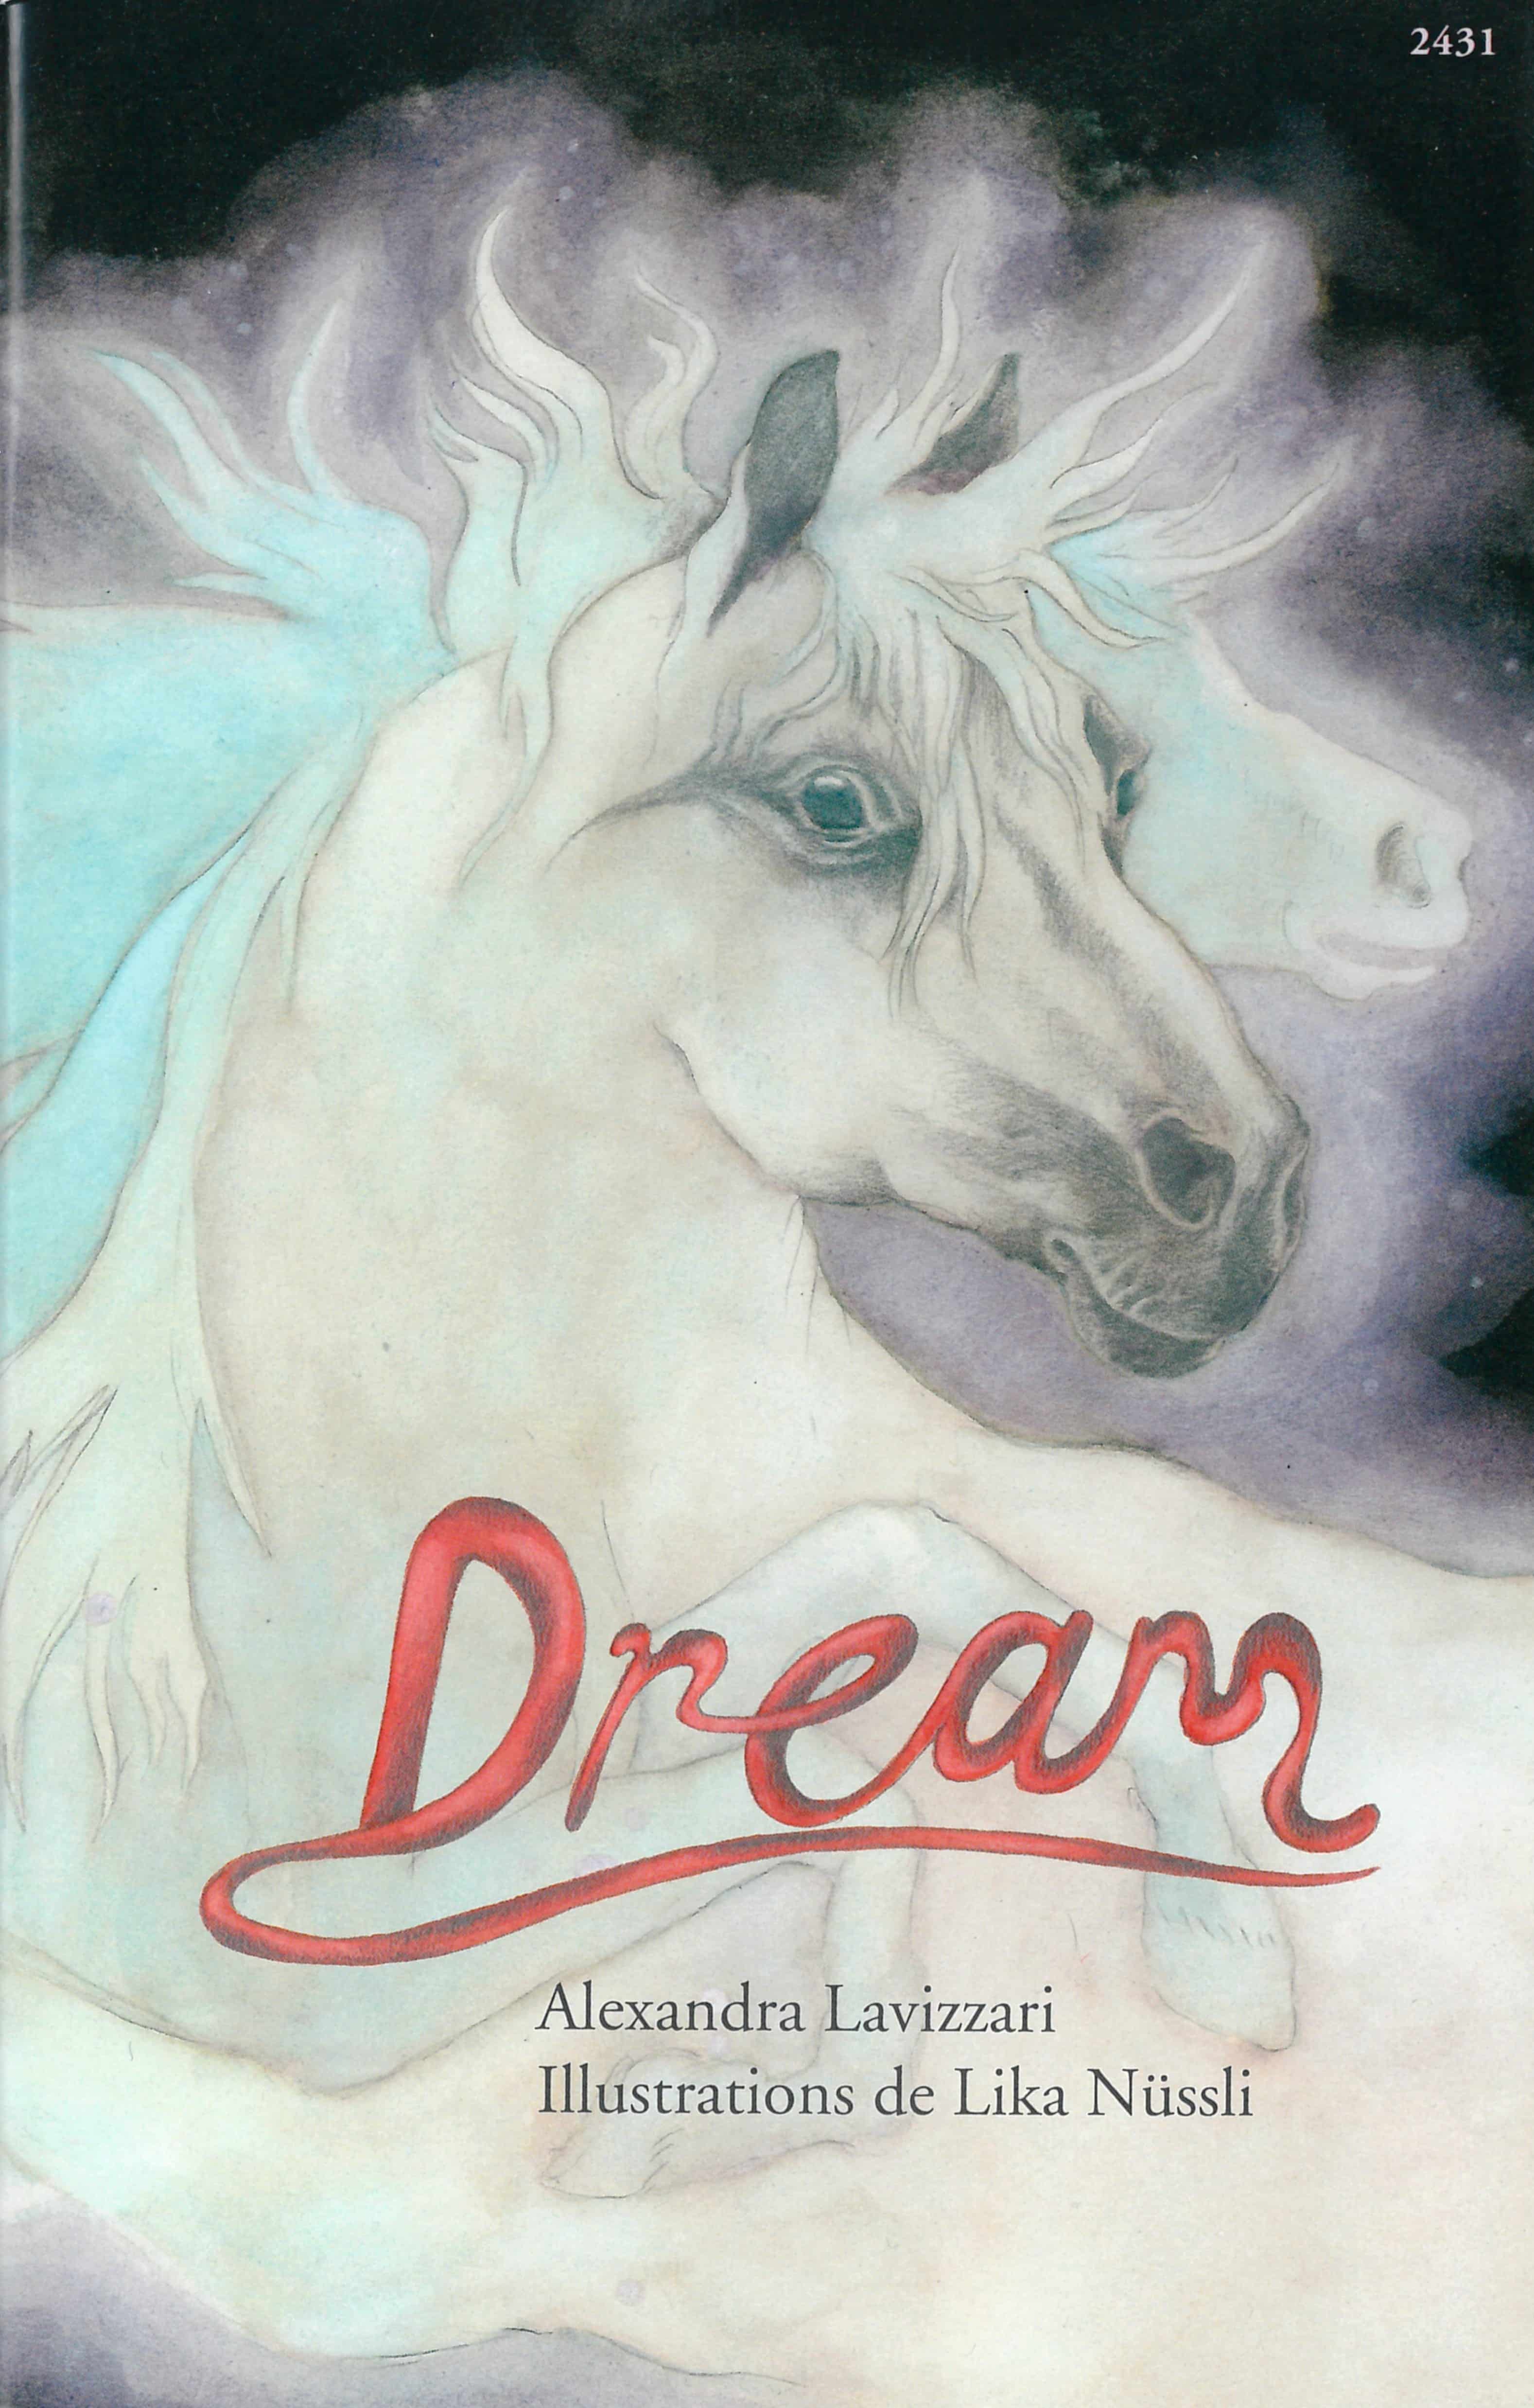 Dream, un livre pour enfants d’Alexandra Lavizzari, illustré par Lika Nuessli, éditions de l'OSL, cheval, fantastique